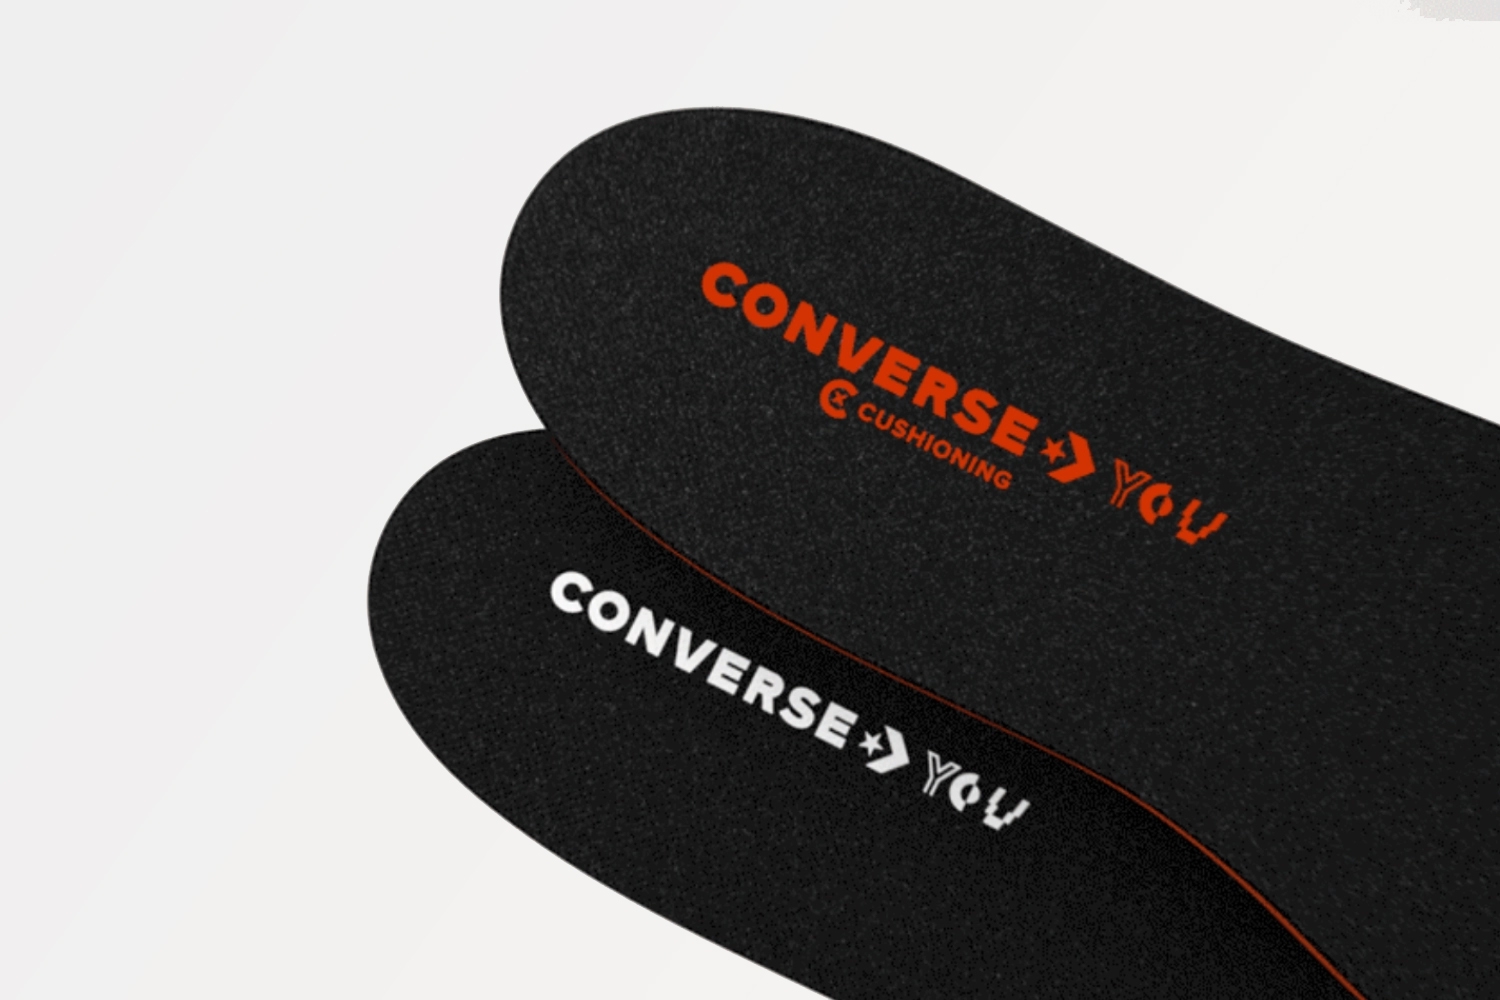 Converse biedt nu ook meer comfort voor brede maten